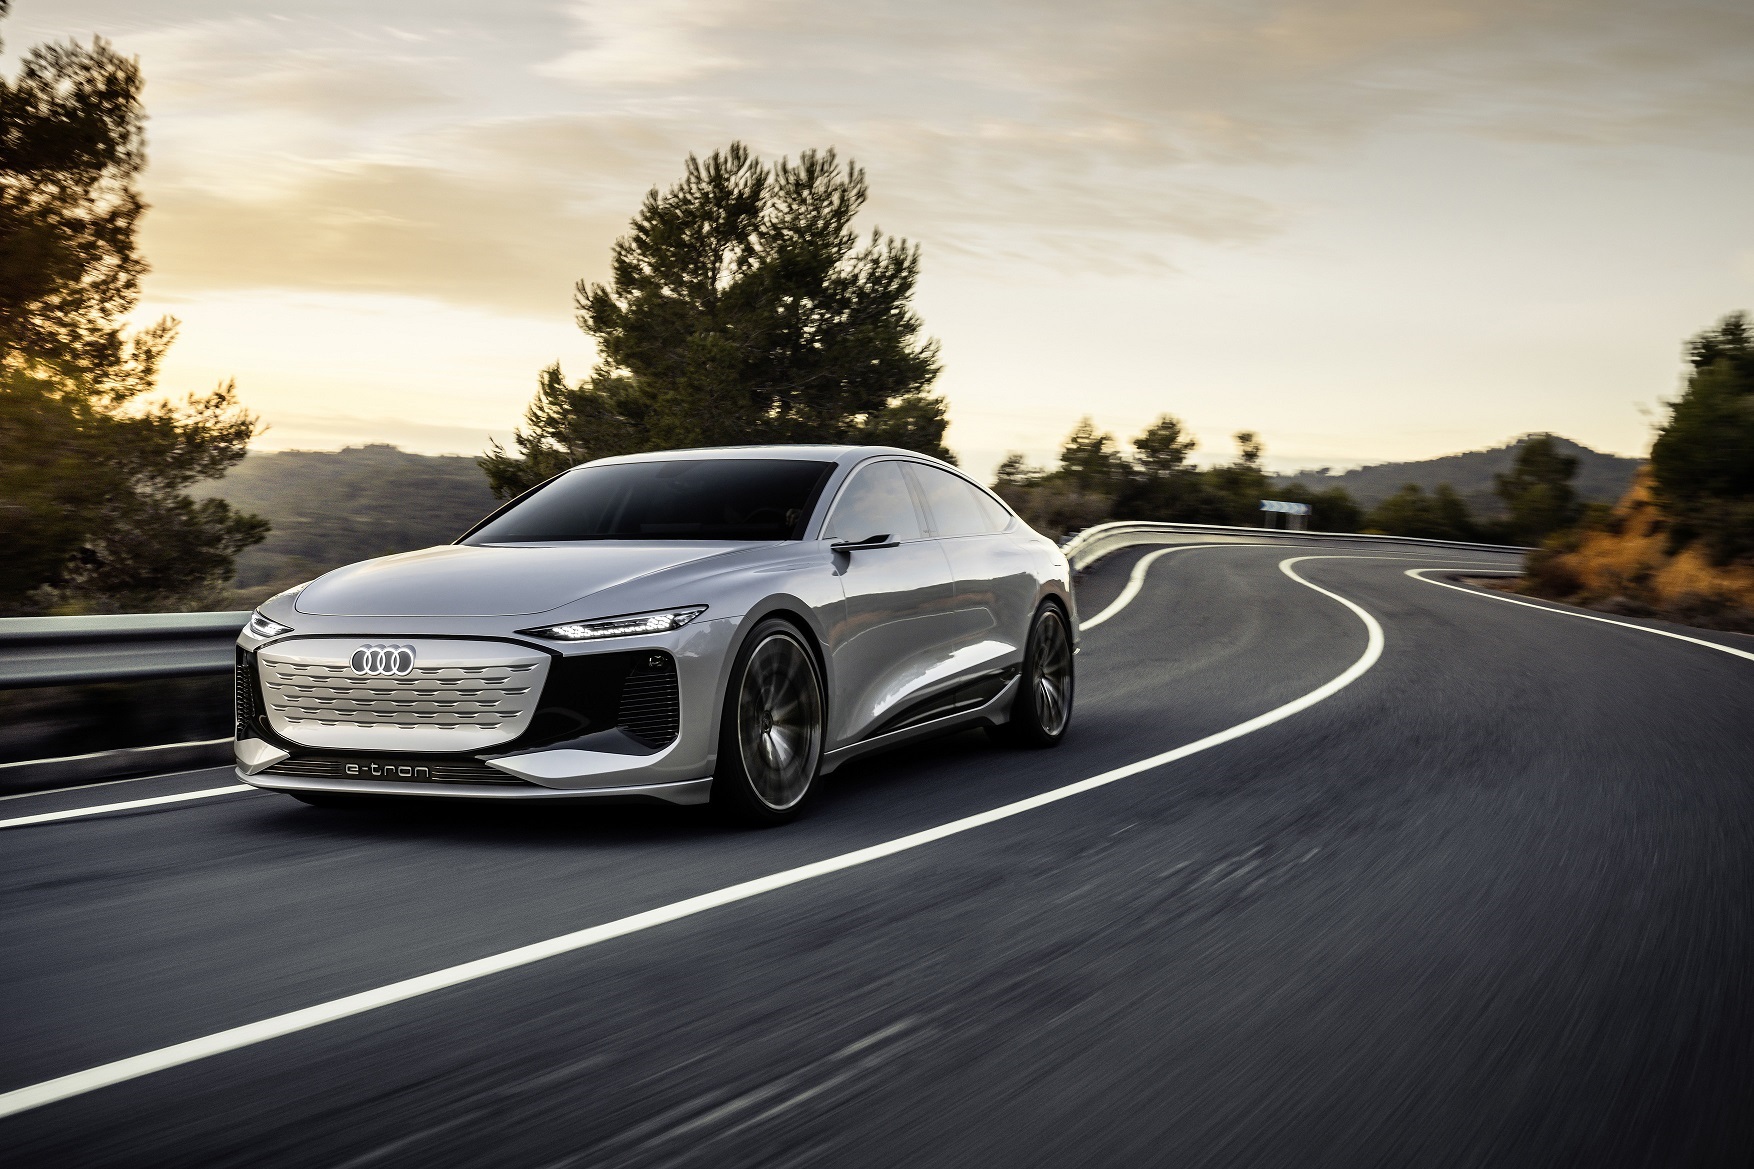 Audi mostra conceito A6 e-tron com autonomia de até 700 km